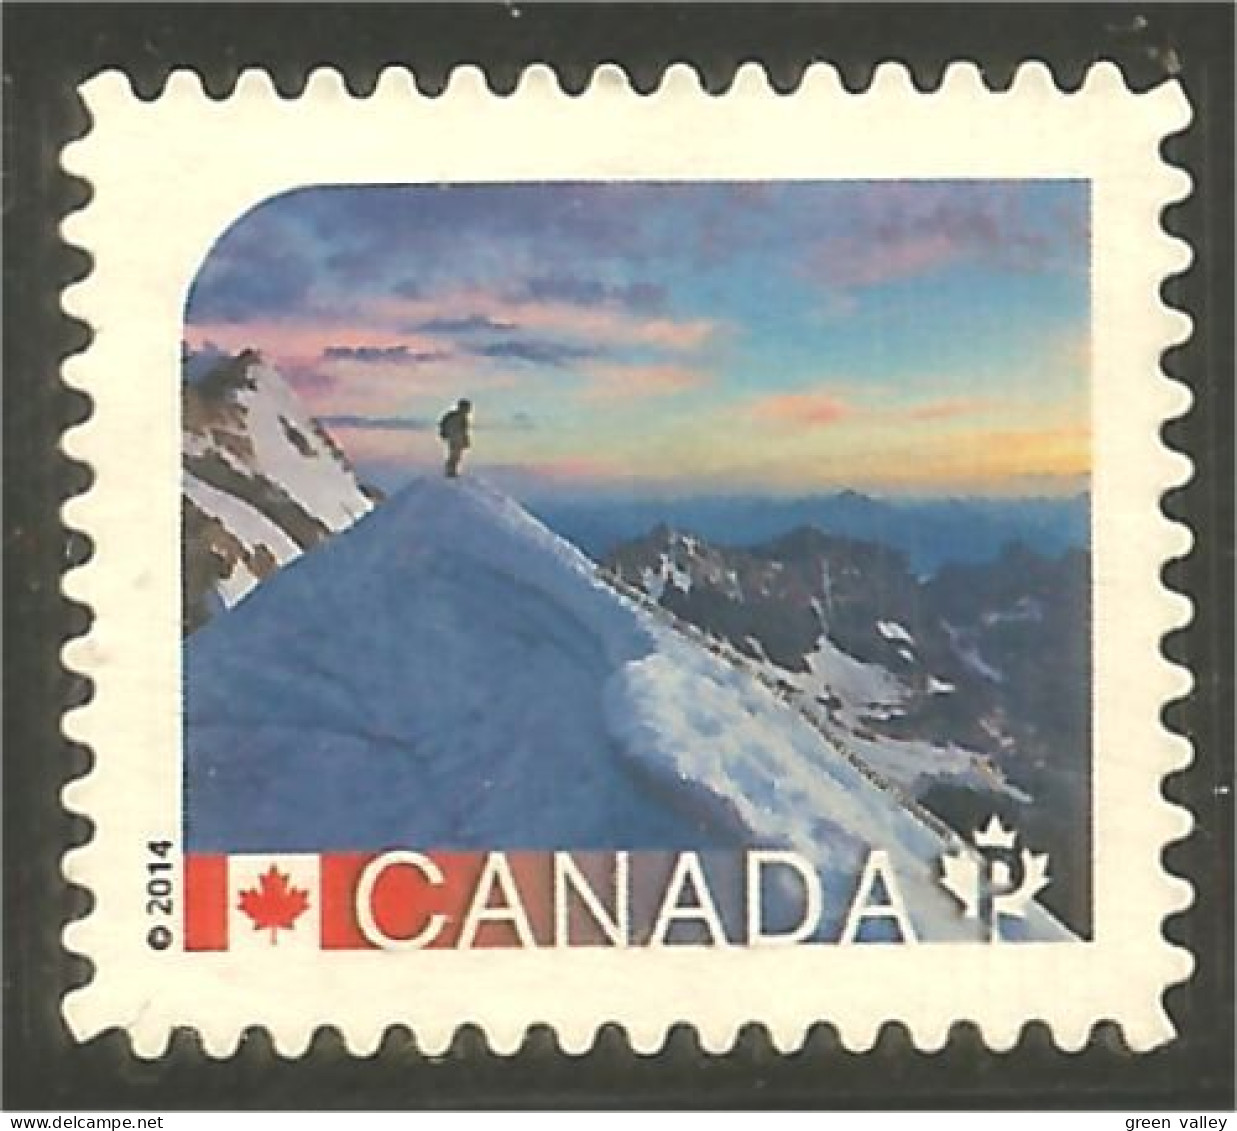 Canada Alpinisme Montagne Escalade Mountain Climbing Mint No Gum (309b) - Bergsteigen